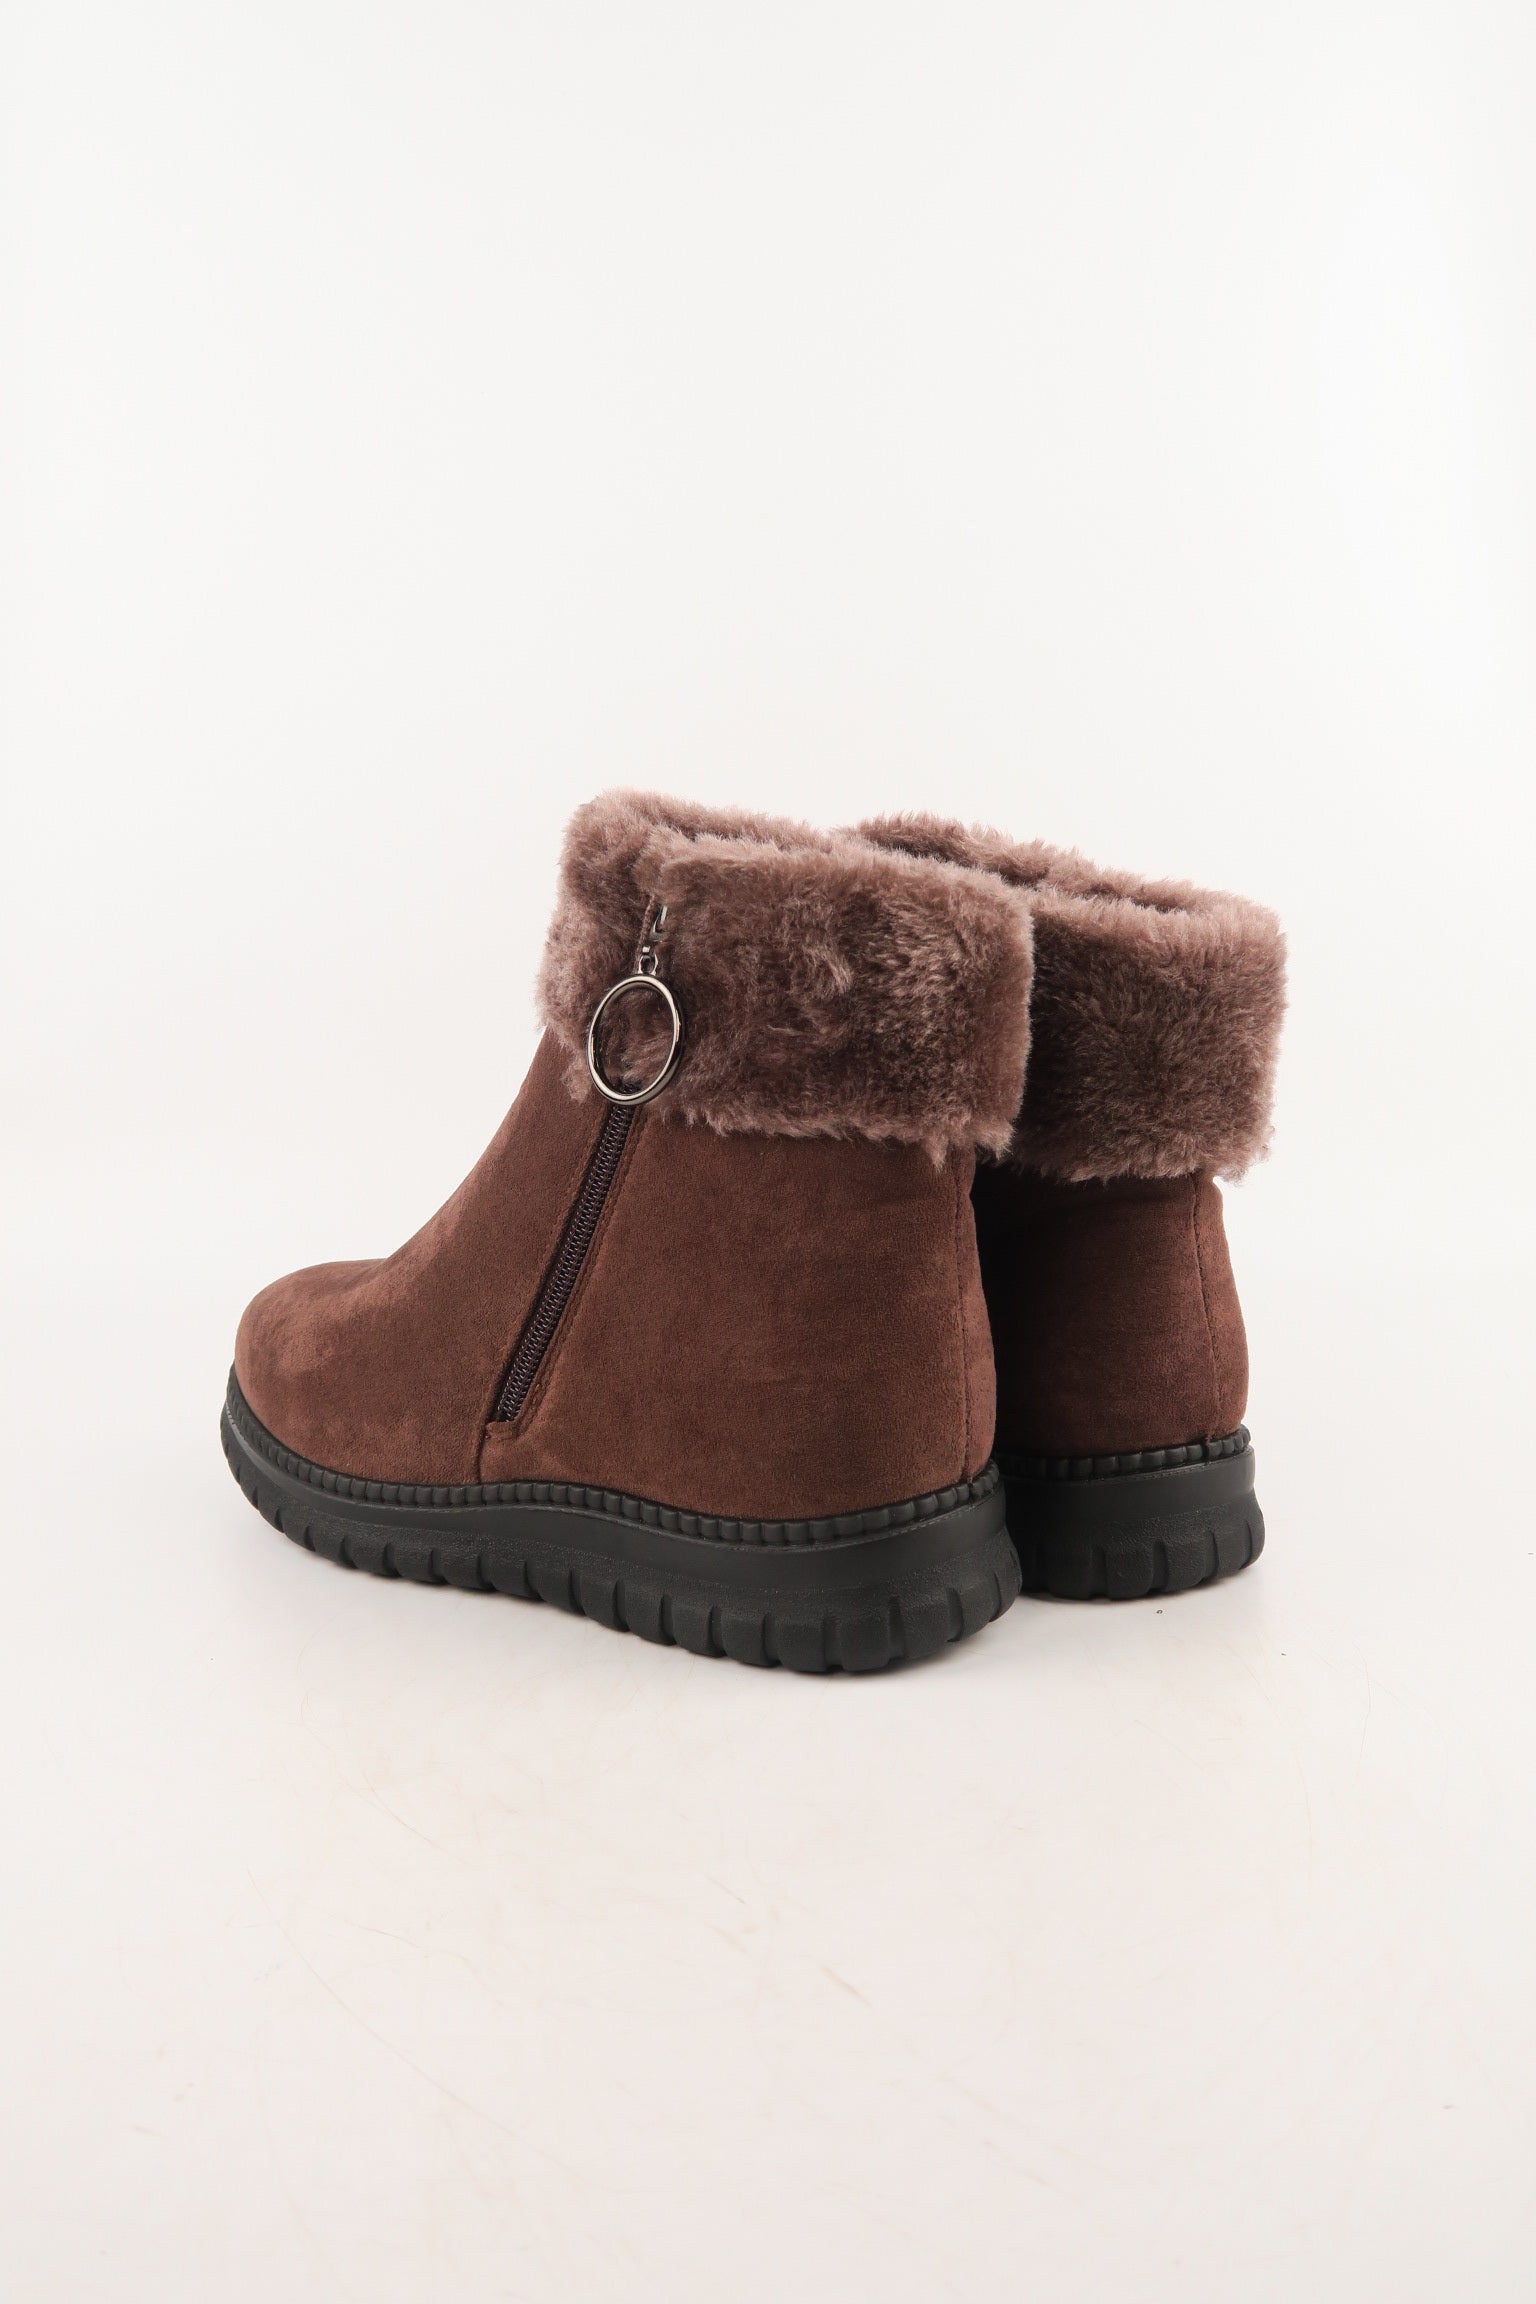 รองเท้าบูทหนังกำมะหยี่ แต่งขนเฟอร์ no.80223-10 - Winter Boots Minus The Fur Lining On The Inside